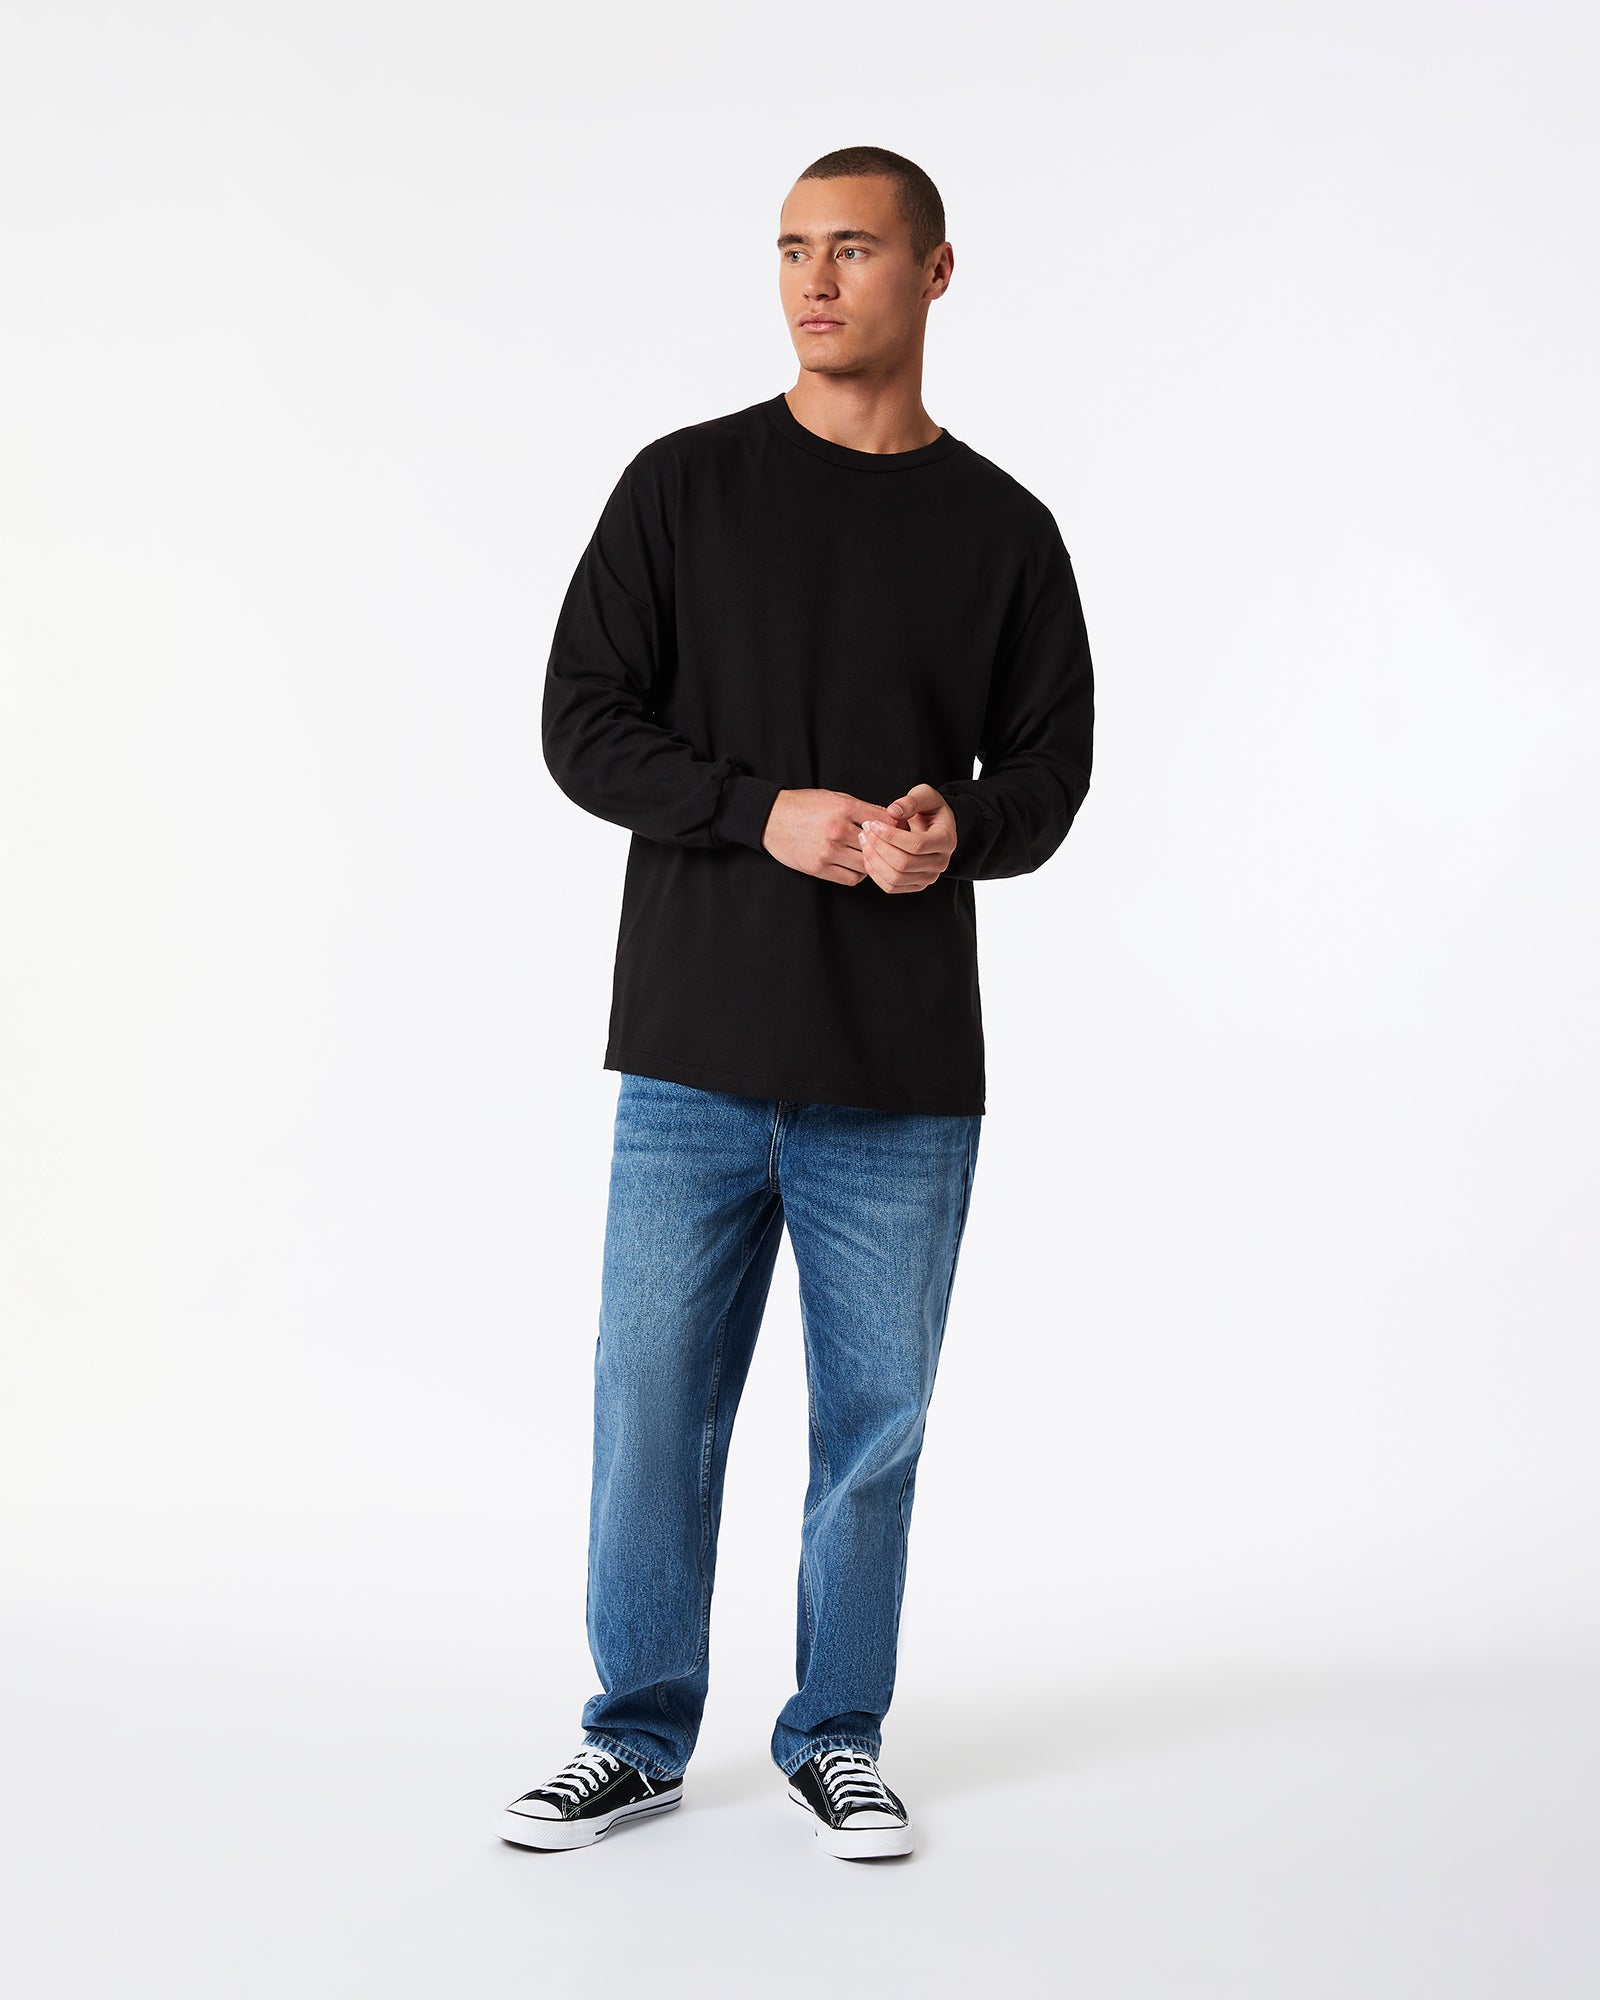 Heavyweight Unisex Long Sleeve T-Shirt